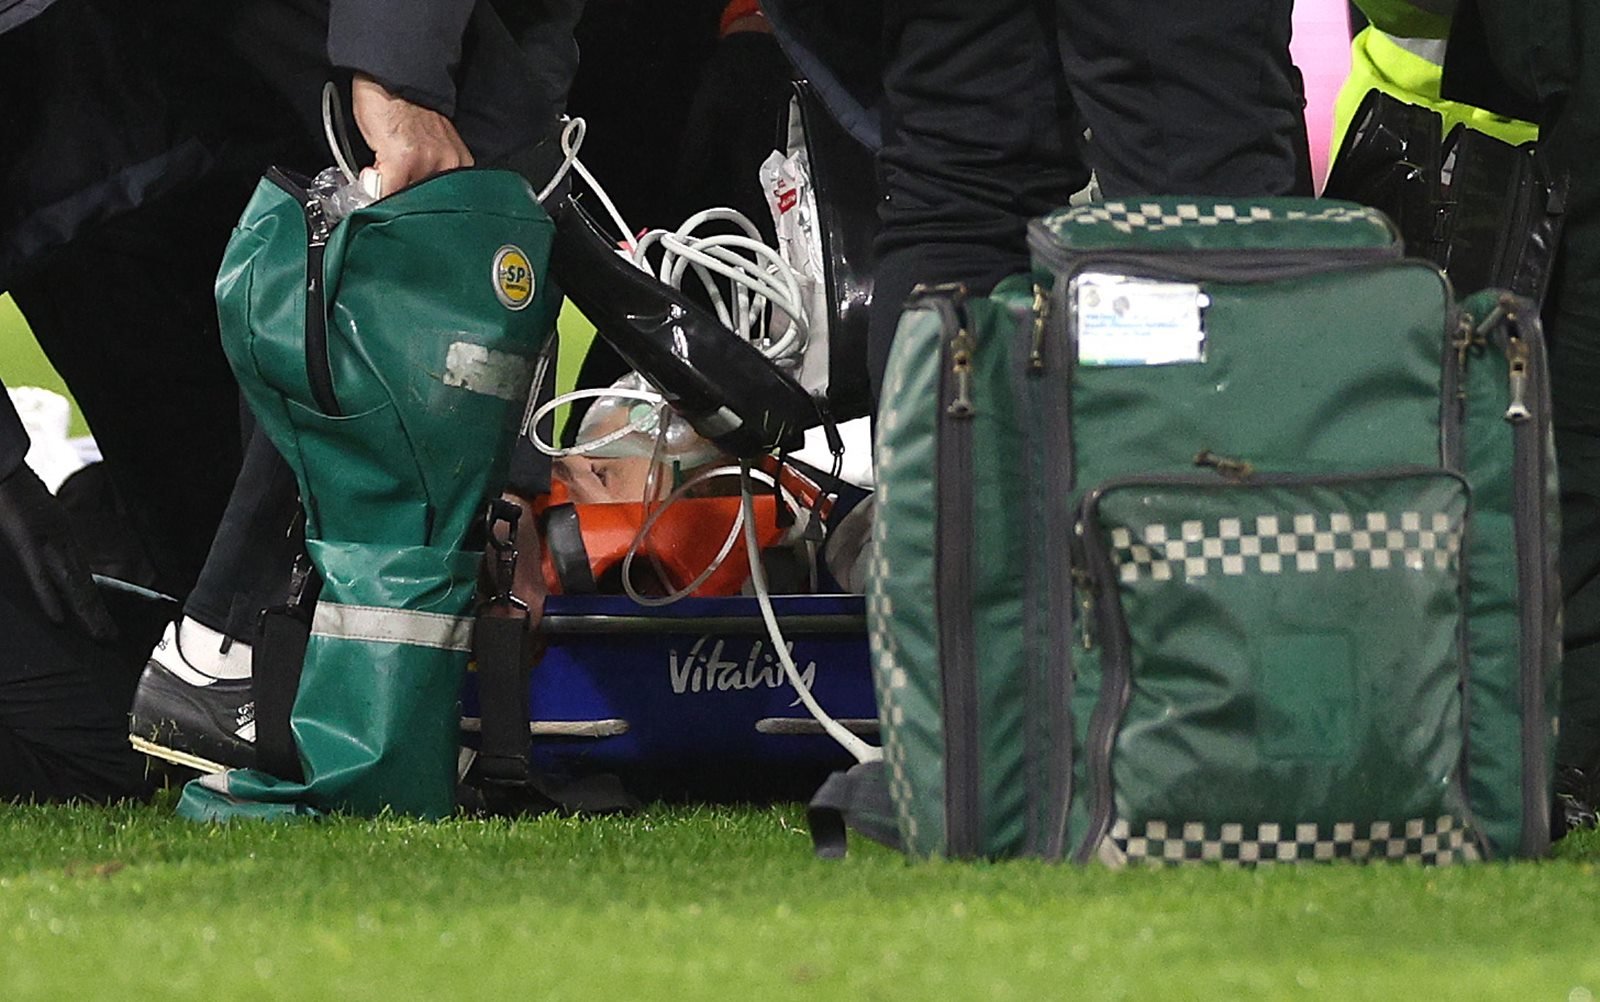 Jogador do Luton Town sofre paragem cardíaca e colapsa em campo - Futebol -  Correio da Manhã